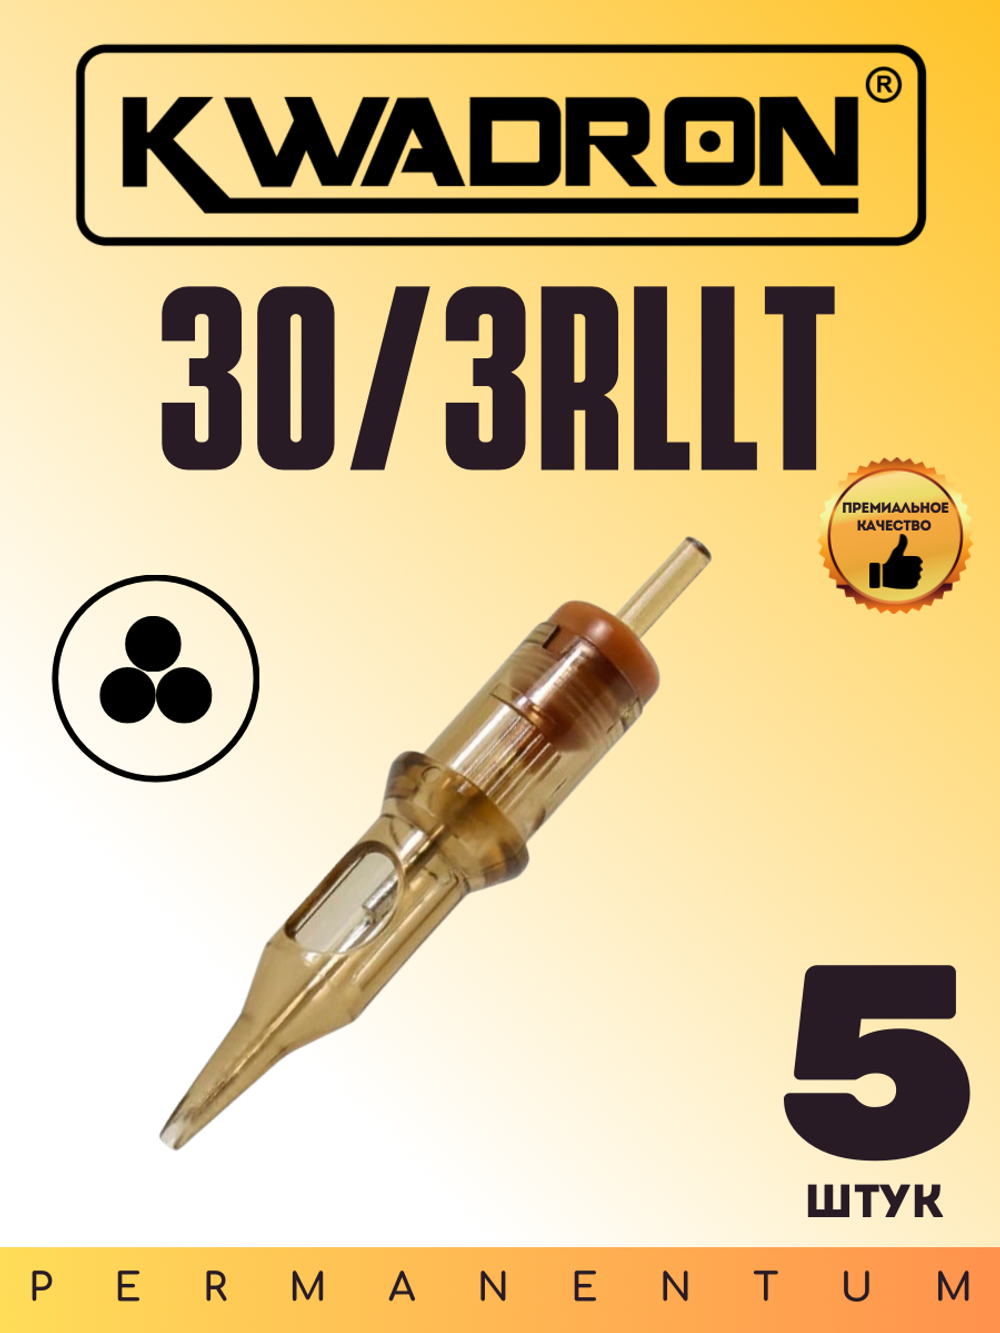 Картридж для татуажа "KWADRON Round Liner 30/3RLLT" блистер 5 шт.